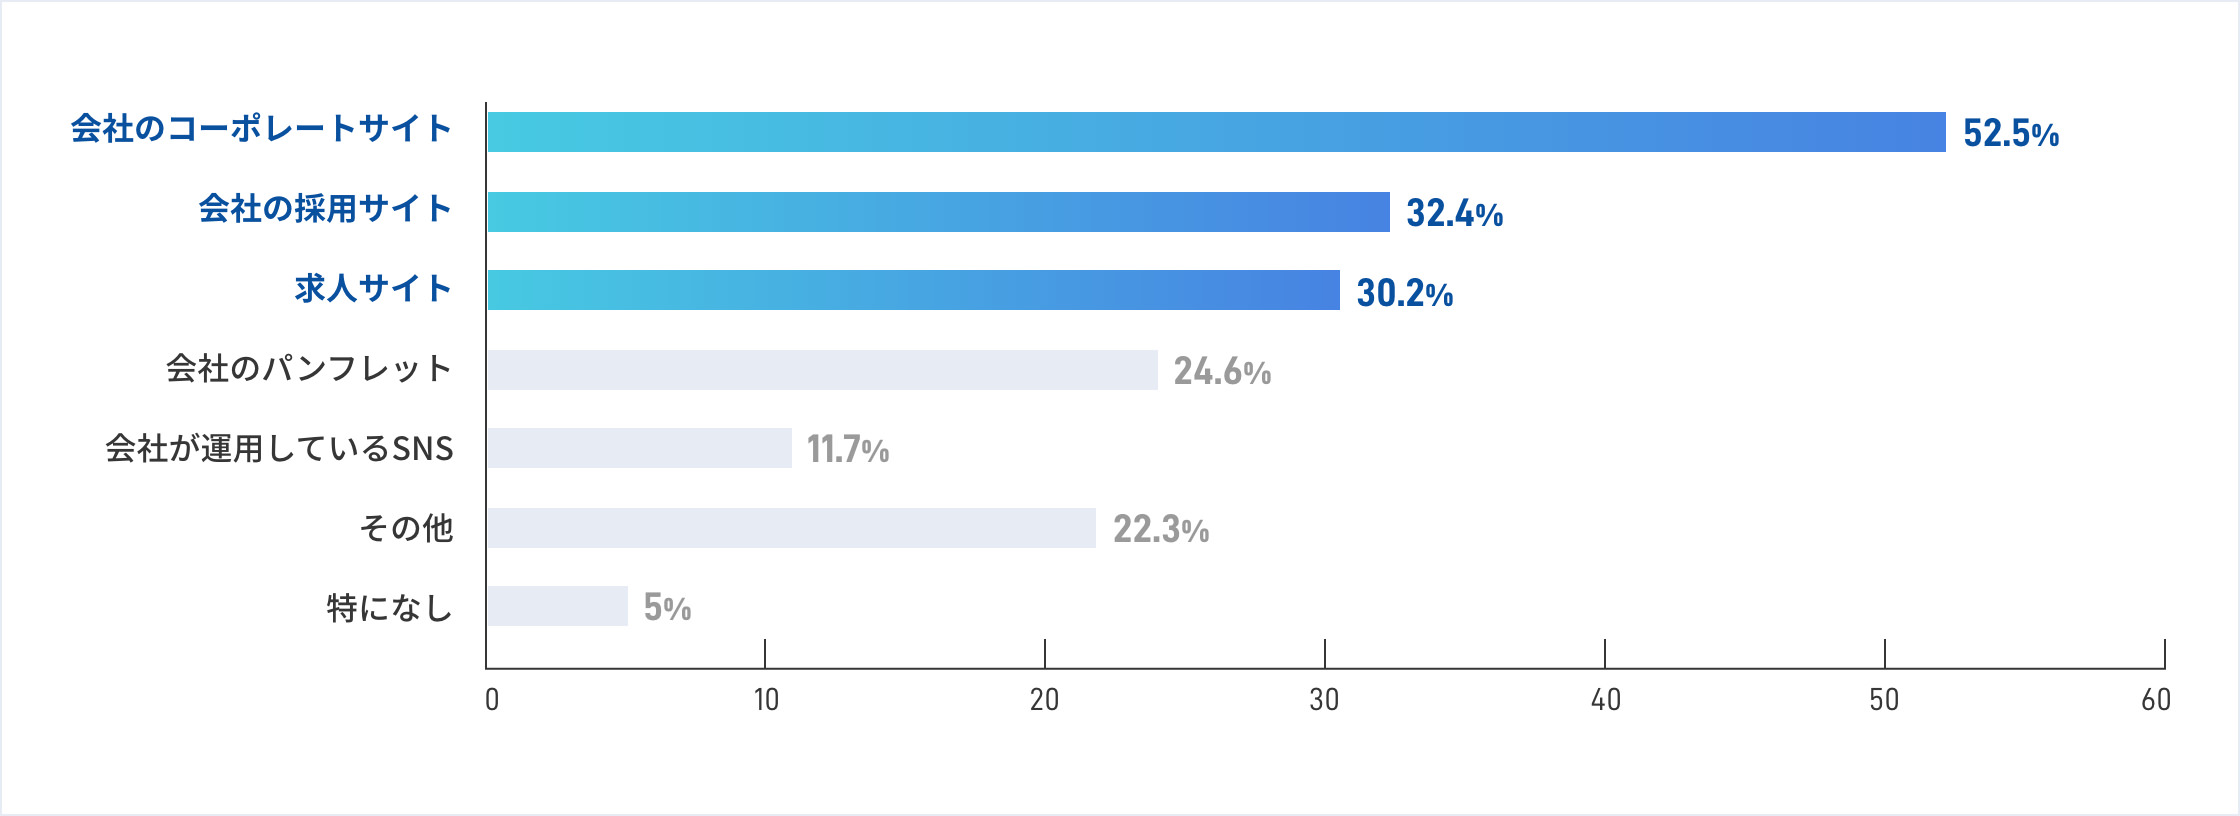 会社のコーポレートサイト：52.5%、会社の採用サイト：32.4%、求人サイト：30.2%、会社のパンフレット：24.6%、会社が運用しているSNS：11.7%、その他：22.3%、特になし：5%